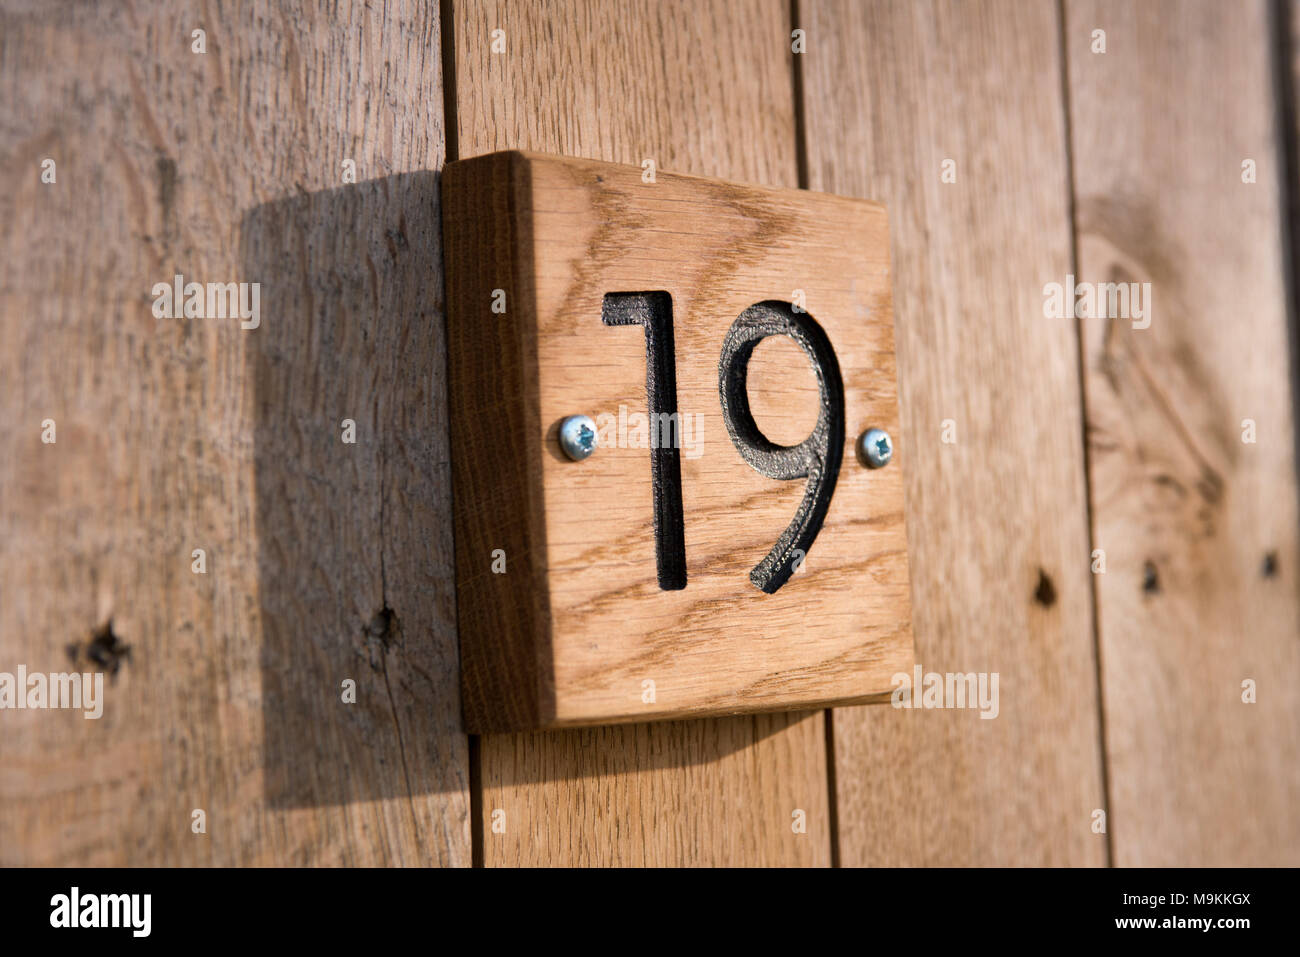 Le nombre dix-neuf carreaux de bois sculpté dans une plaque sur une maison pour montrer l'adresse propriétés Banque D'Images